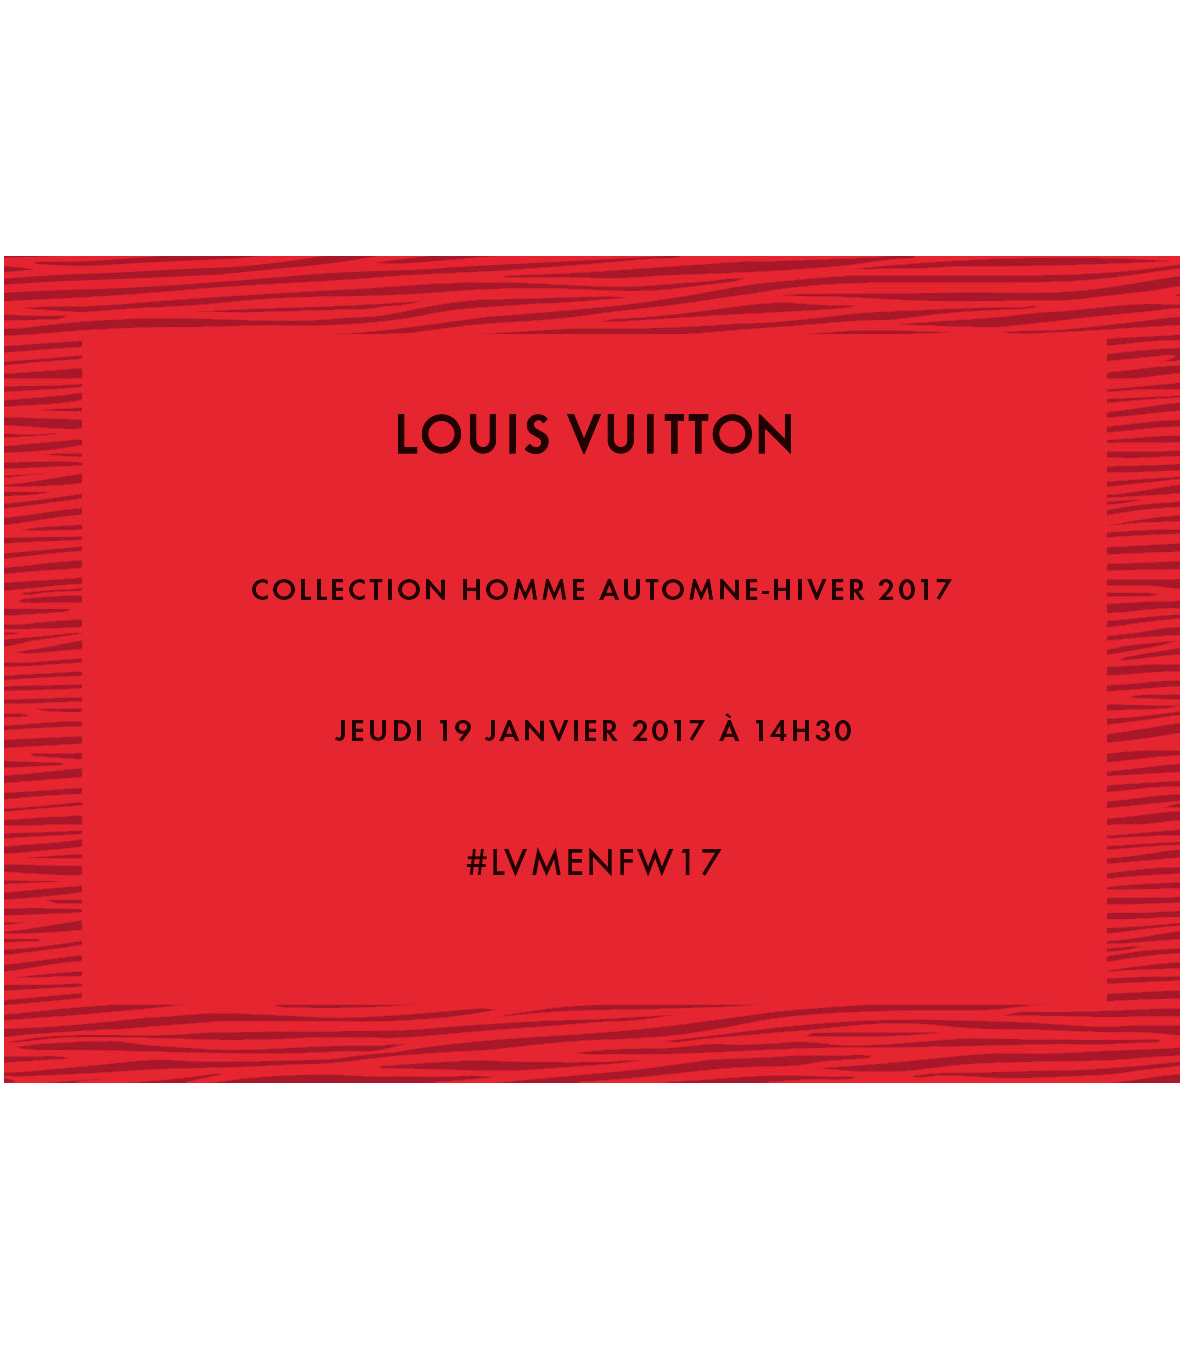 LOUIS VUITTON – LIVESTREAMING POKAZU MĘSKIEJ KOLEKCJI JESIEŃ ZIMA 2017